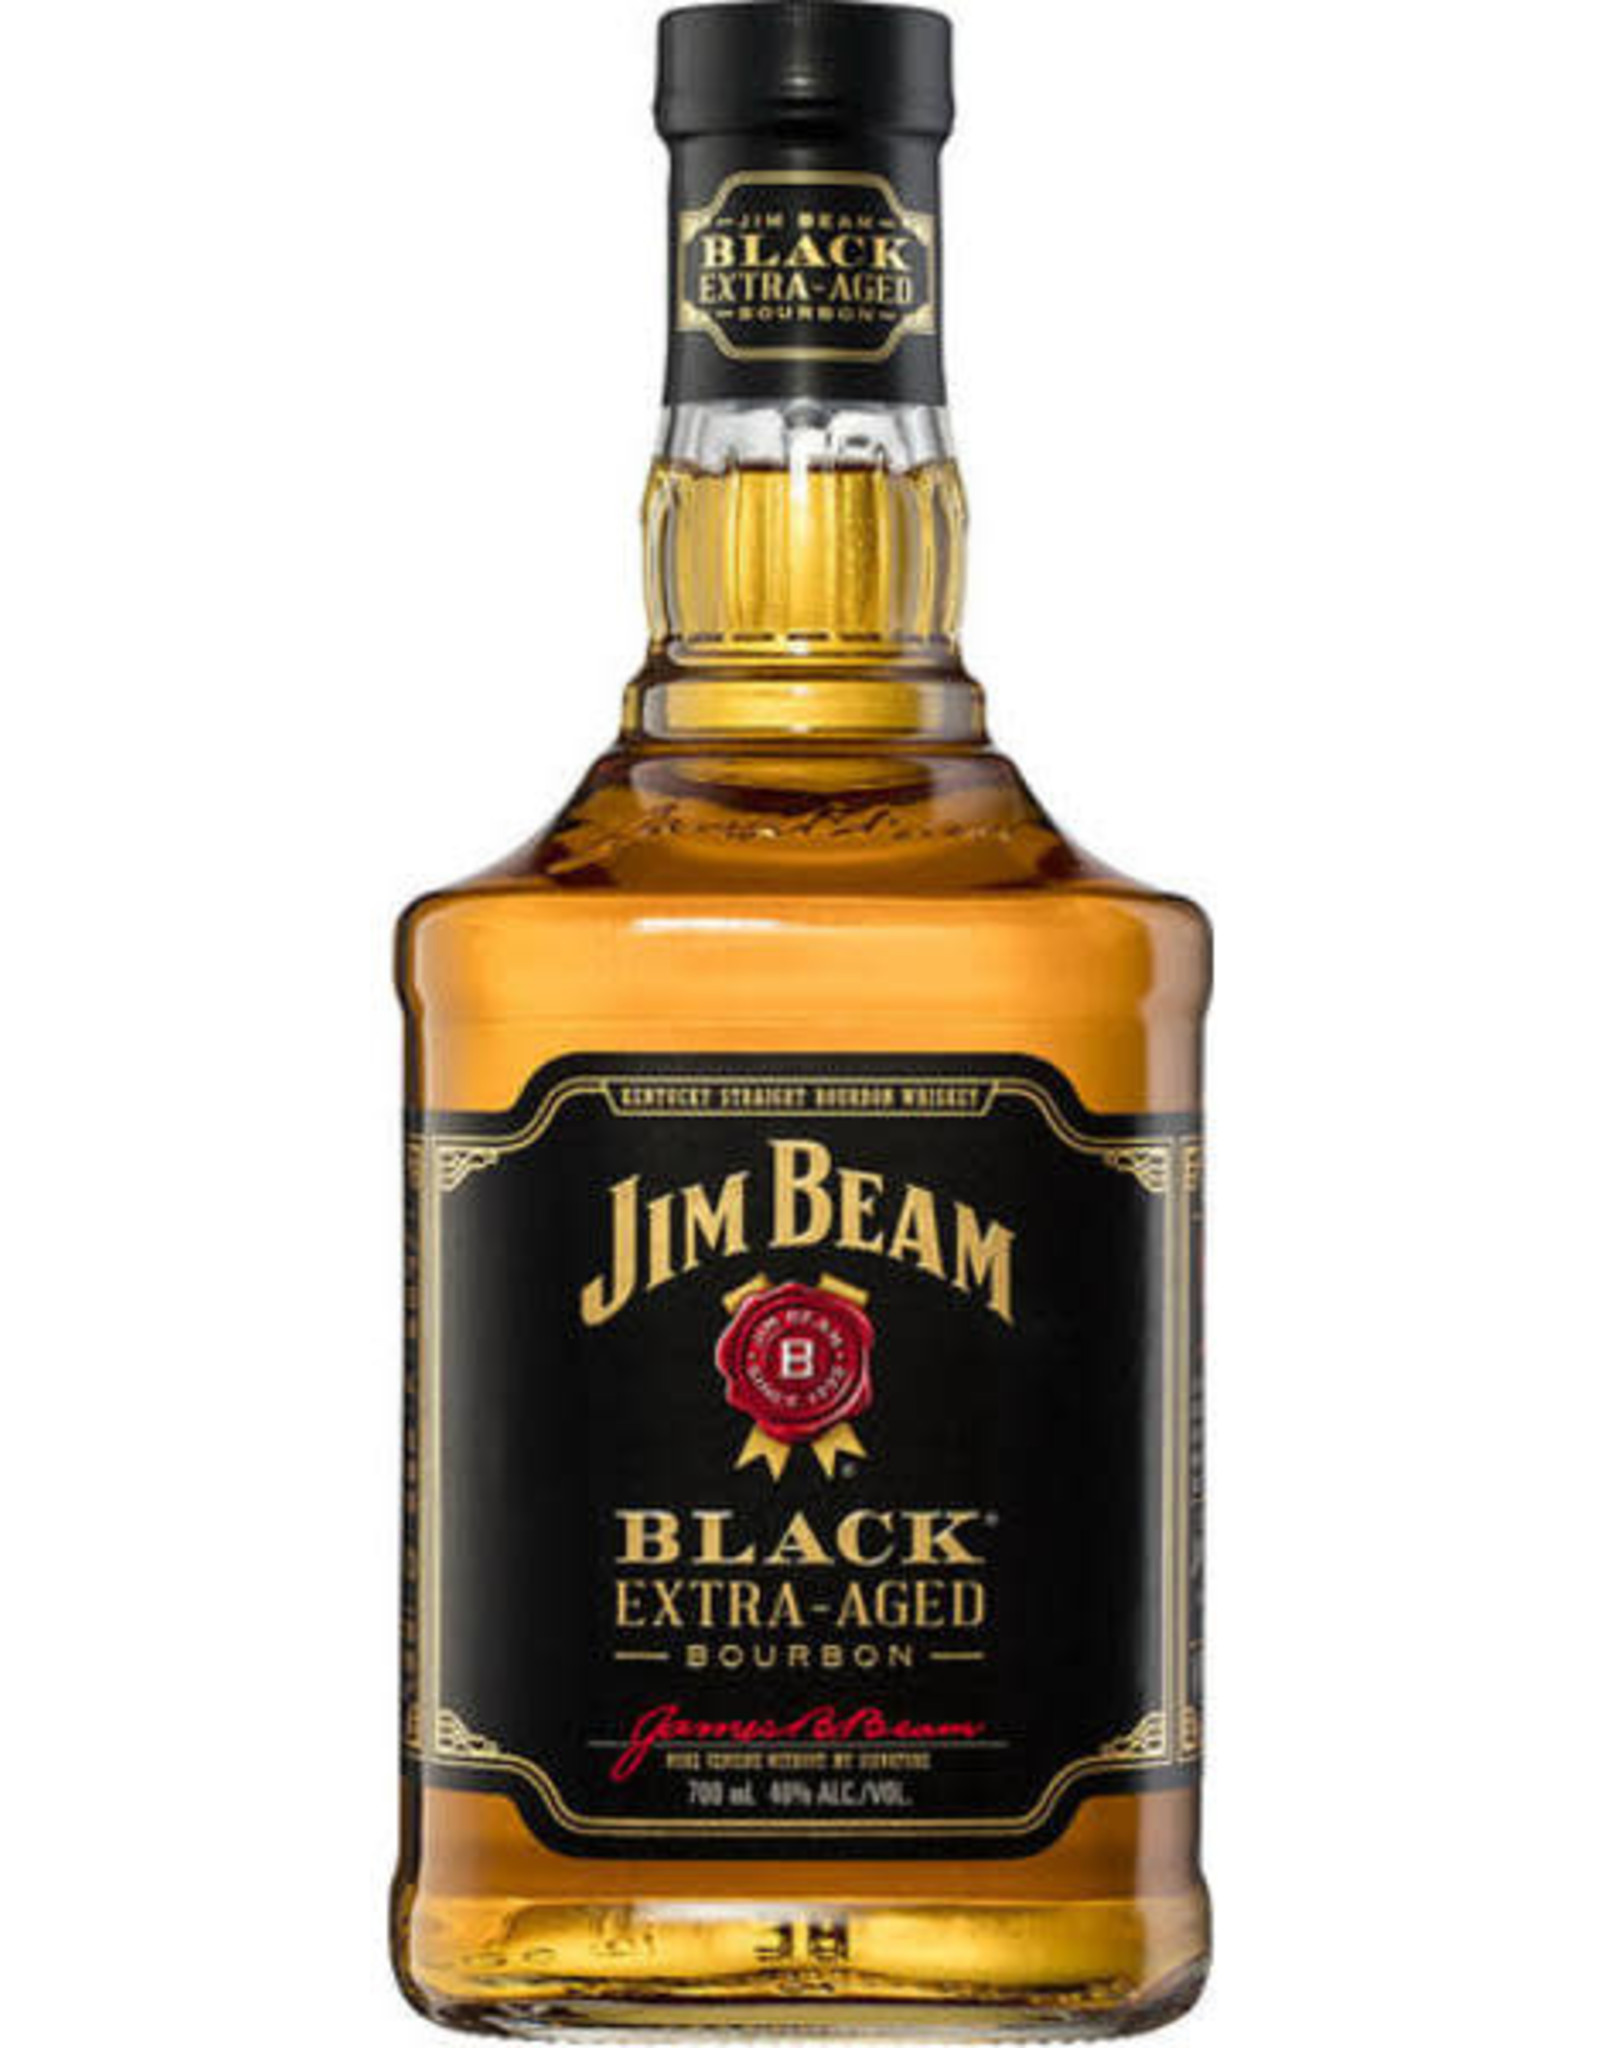 Jim Beam JIM BEAM - BLACK - 86 PR - 8 YR - 375 ML